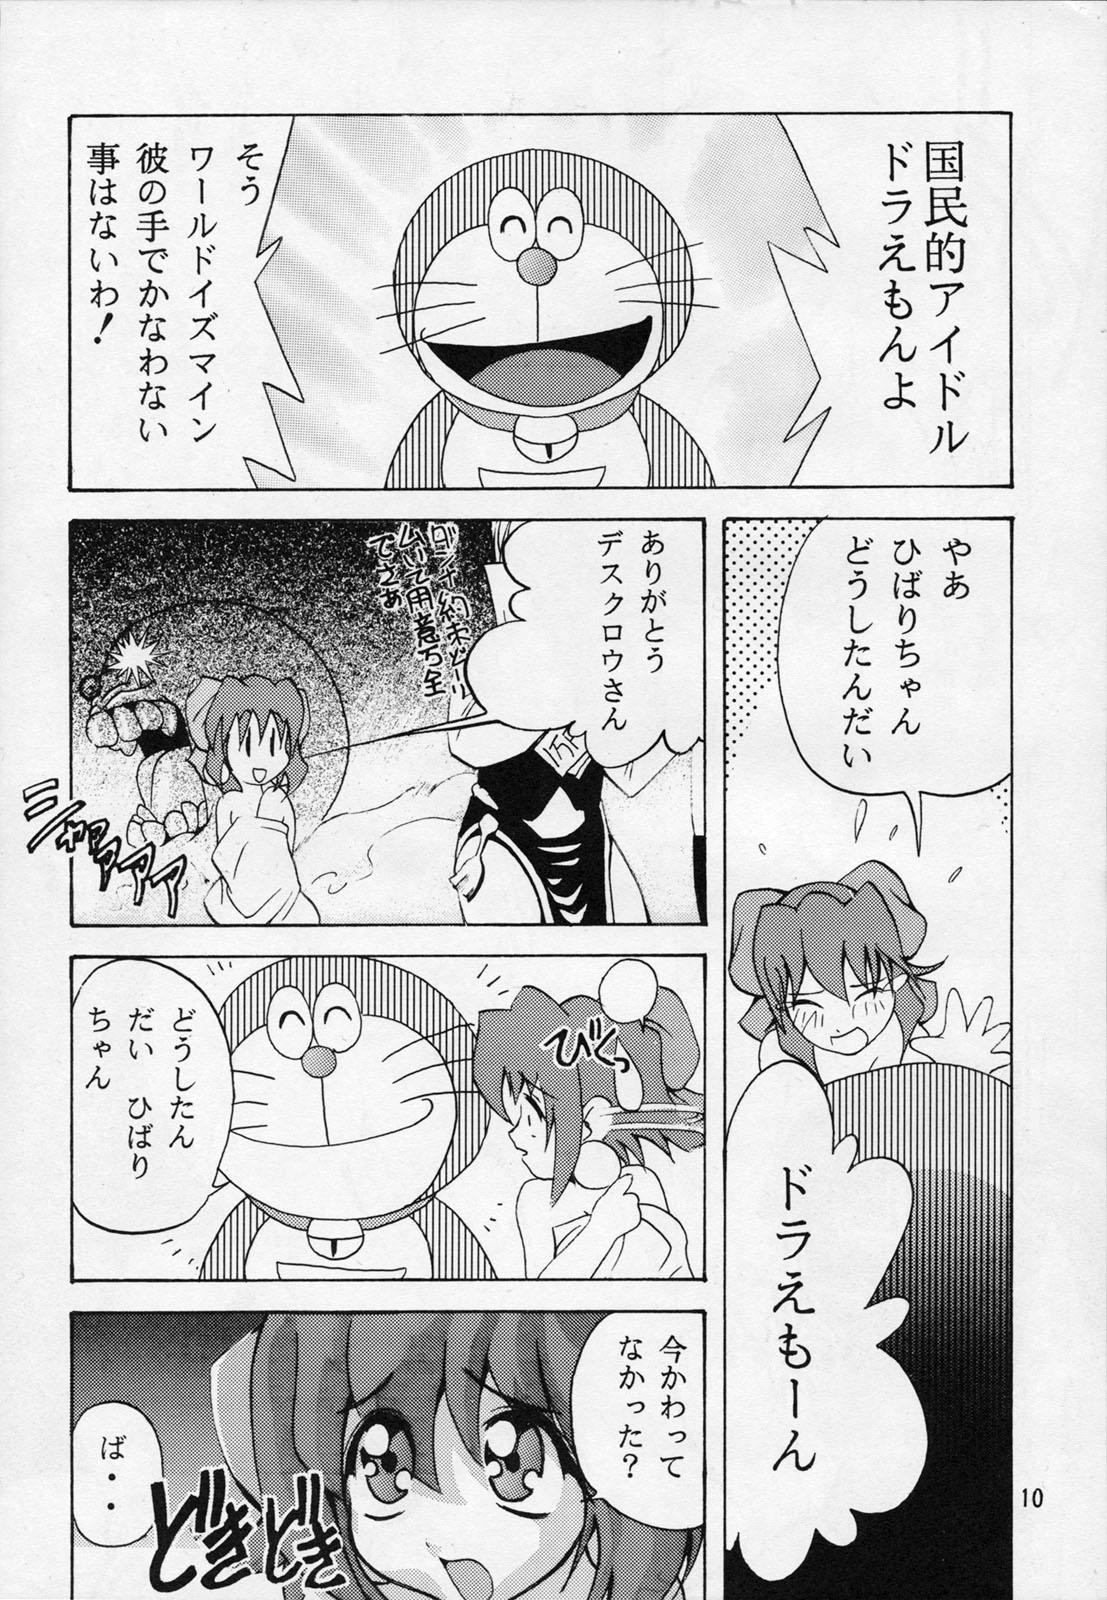 Letsdoeit TX 1 - To heart Akihabara dennou gumi Speculum - Page 9